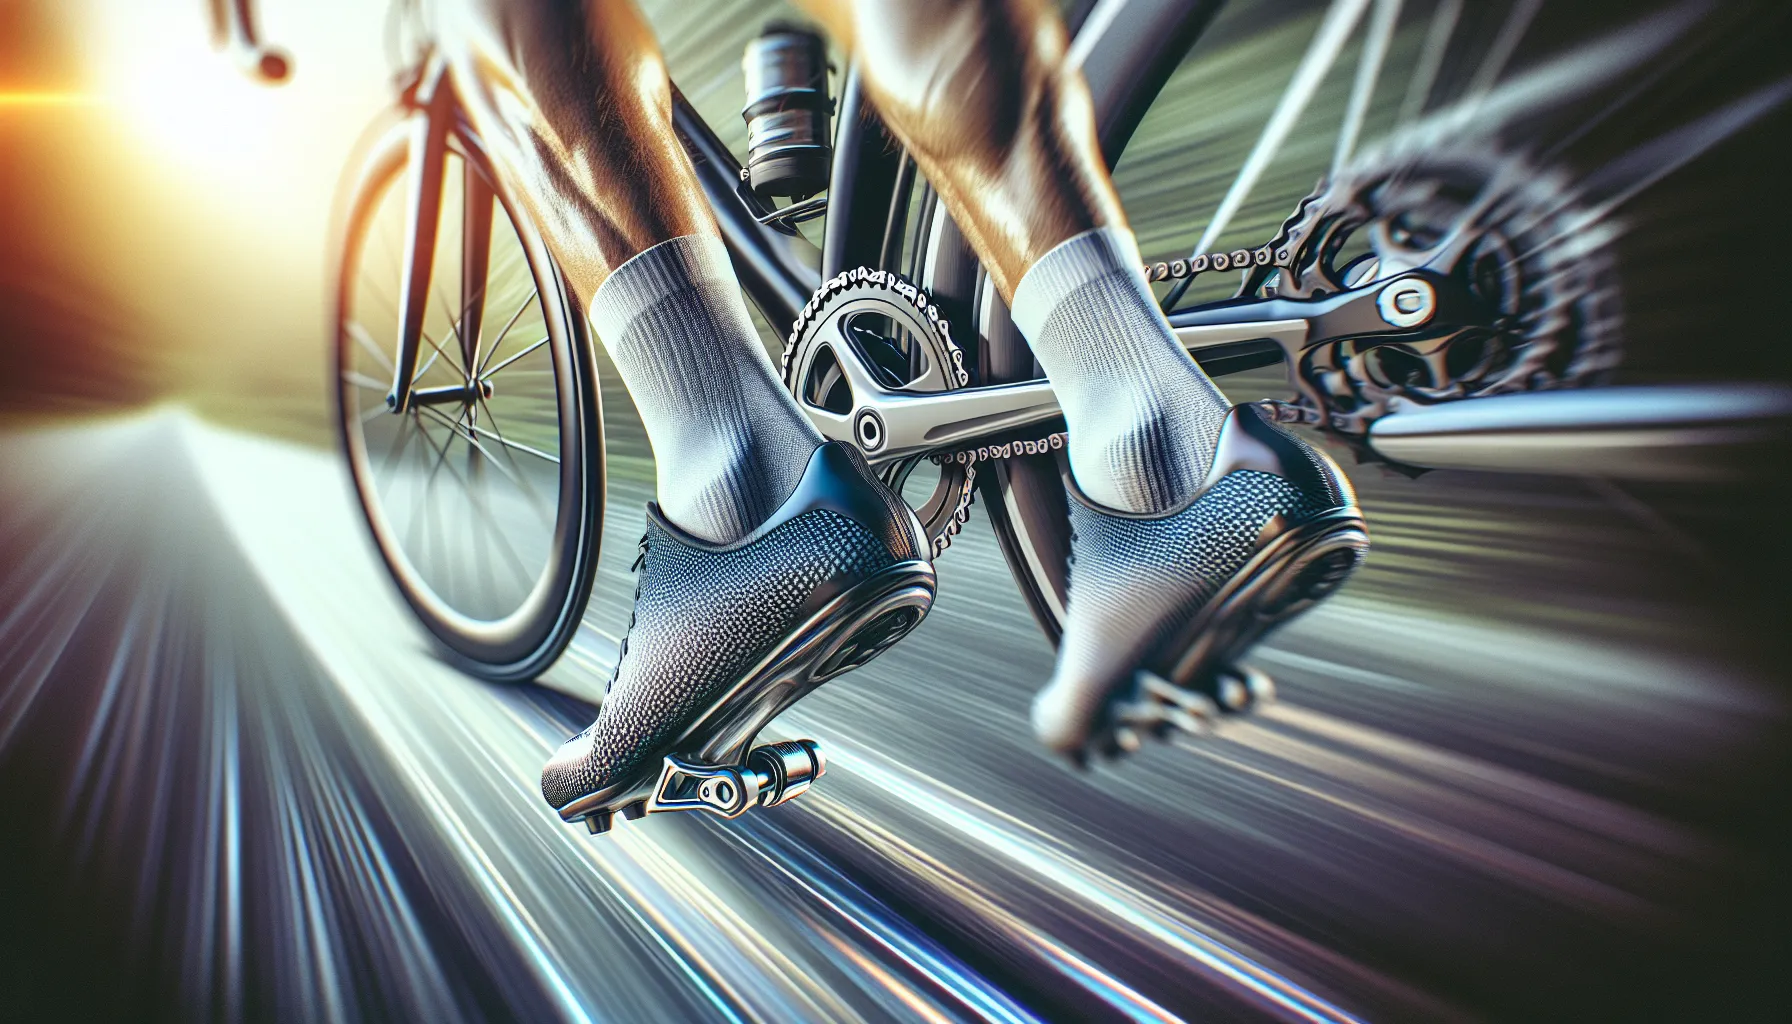 Melhorar sua técnica de pedalada é fundamental para aumentar a eficiência e o desempenho ao andar de bicicleta. Aqui estão algumas dicas para ajudá-lo a aprimorar sua técnica:

1. Mantenha uma cadência constante: Tente manter uma cadência de pedalada constante, ou seja, o número de rotações por minuto (RPM). Uma cadência ideal é geralmente entre 80